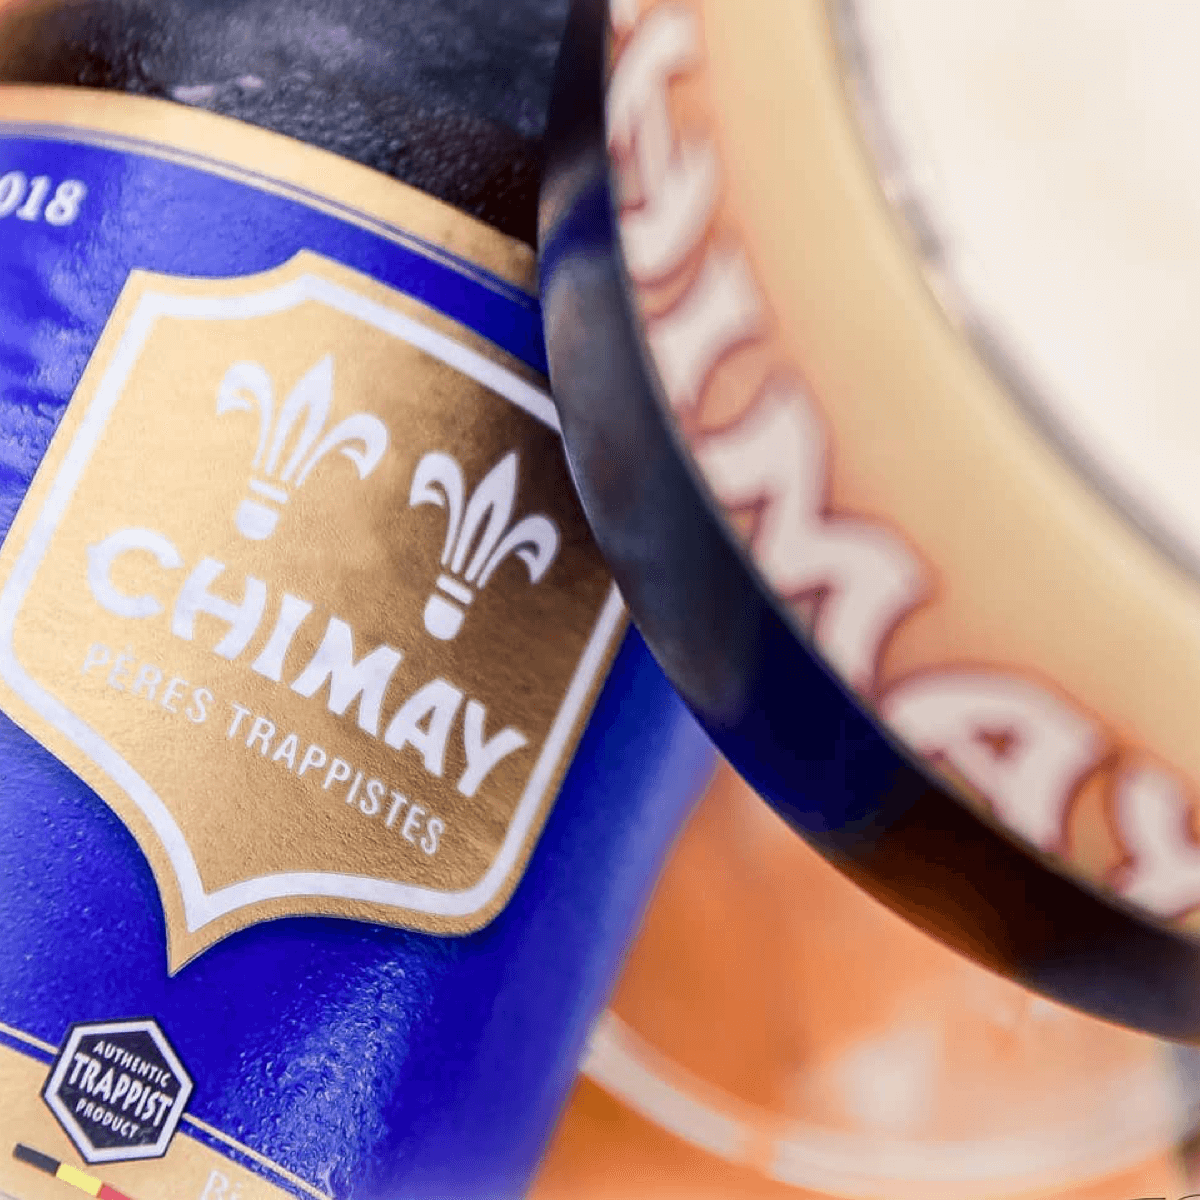 Le logo « Authentic Trappist Product » présent au bas de la bouteille atteste que la Chimay Bleue a bien été brassée sous le strict contrôle des moines